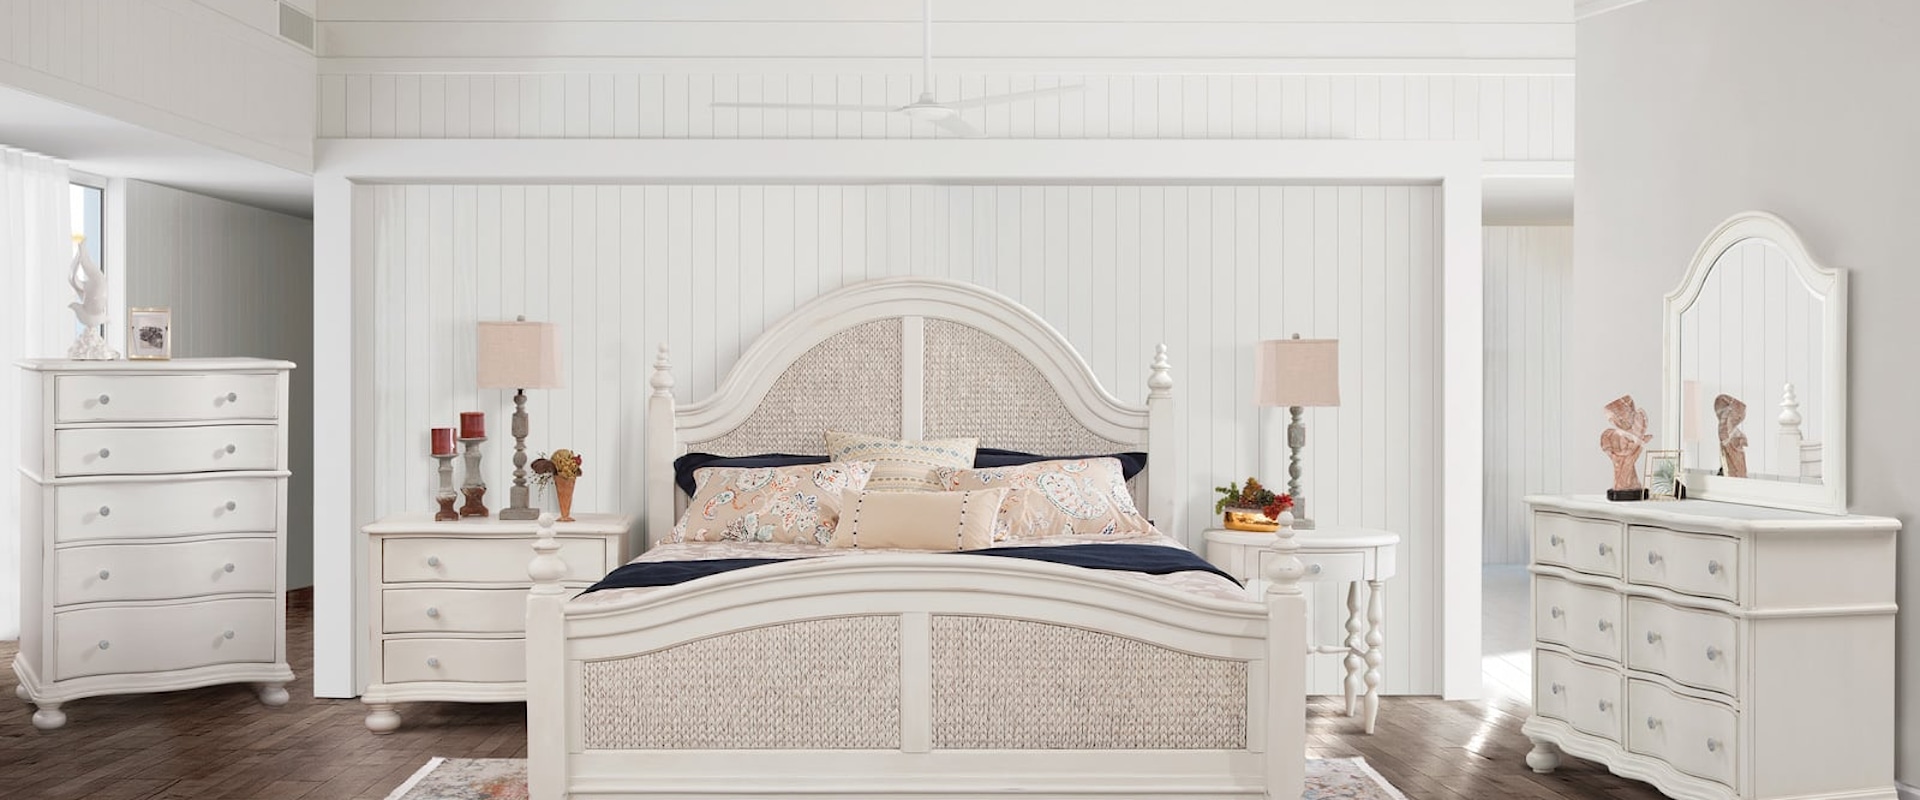 Traditional Queen Bedroom Set